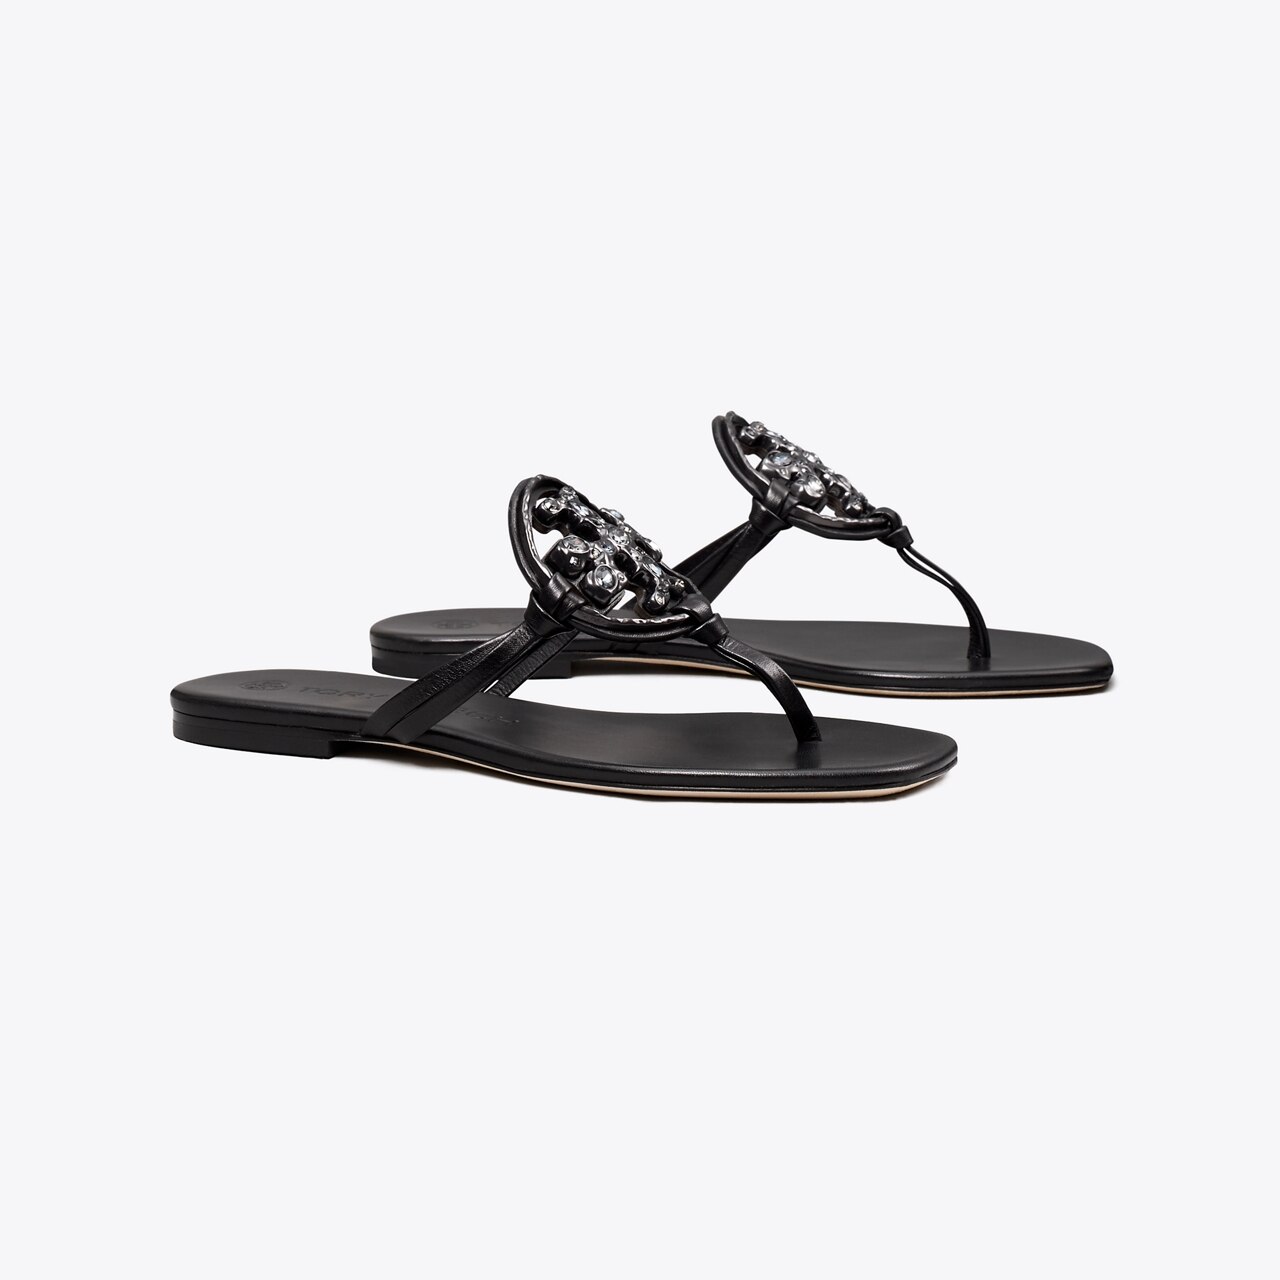  Tory Burch Women's Jeweled Miller Sandals | Flip-Flops